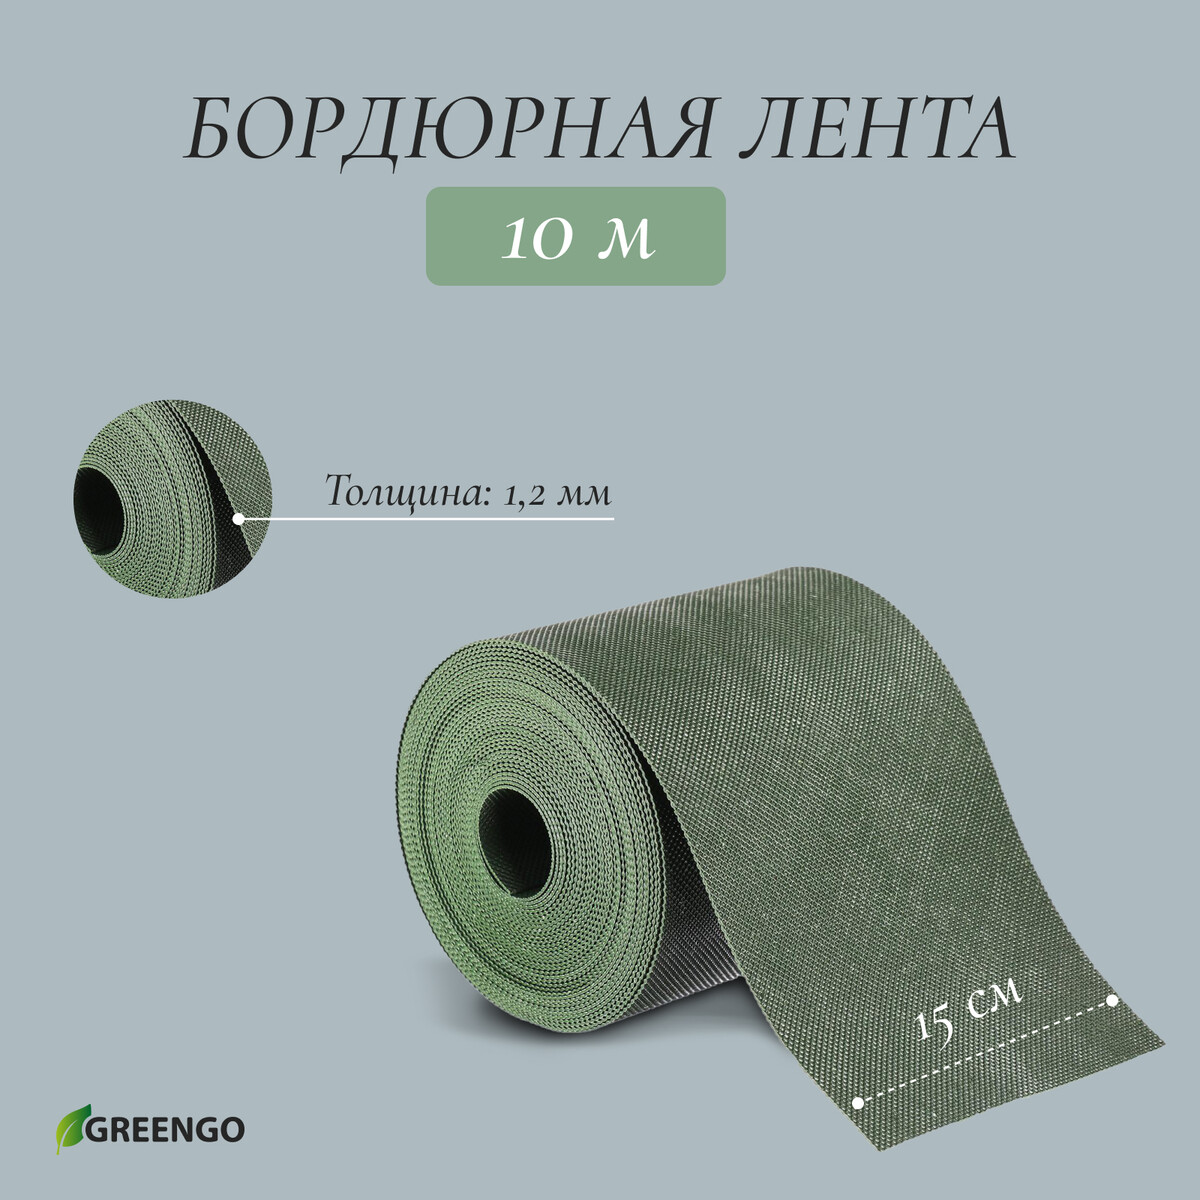 Лента бордюрная, 0.15 × 10 м, толщина 1.2 мм, пластиковая, зеленая, greengo лента бордюрная 0 2 × 9 м толщина 1 2 мм пластиковая фигурная коричневая